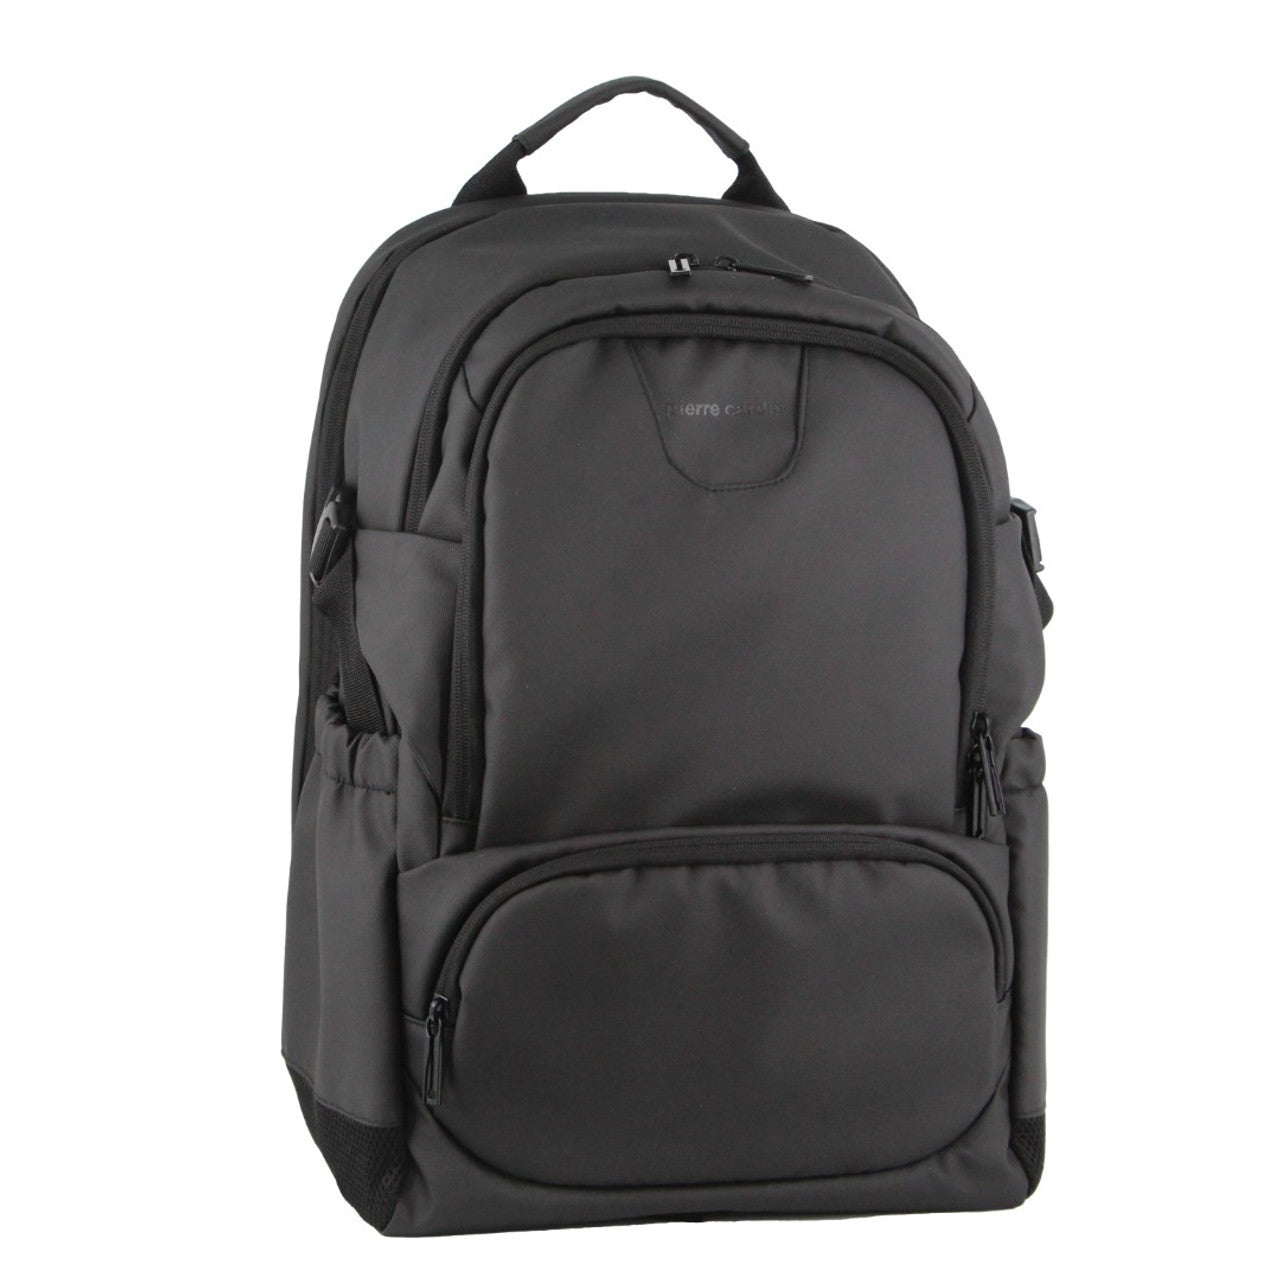 Pierre Cardin - PC3622 15in Laptop backpack w USB port - Black-1